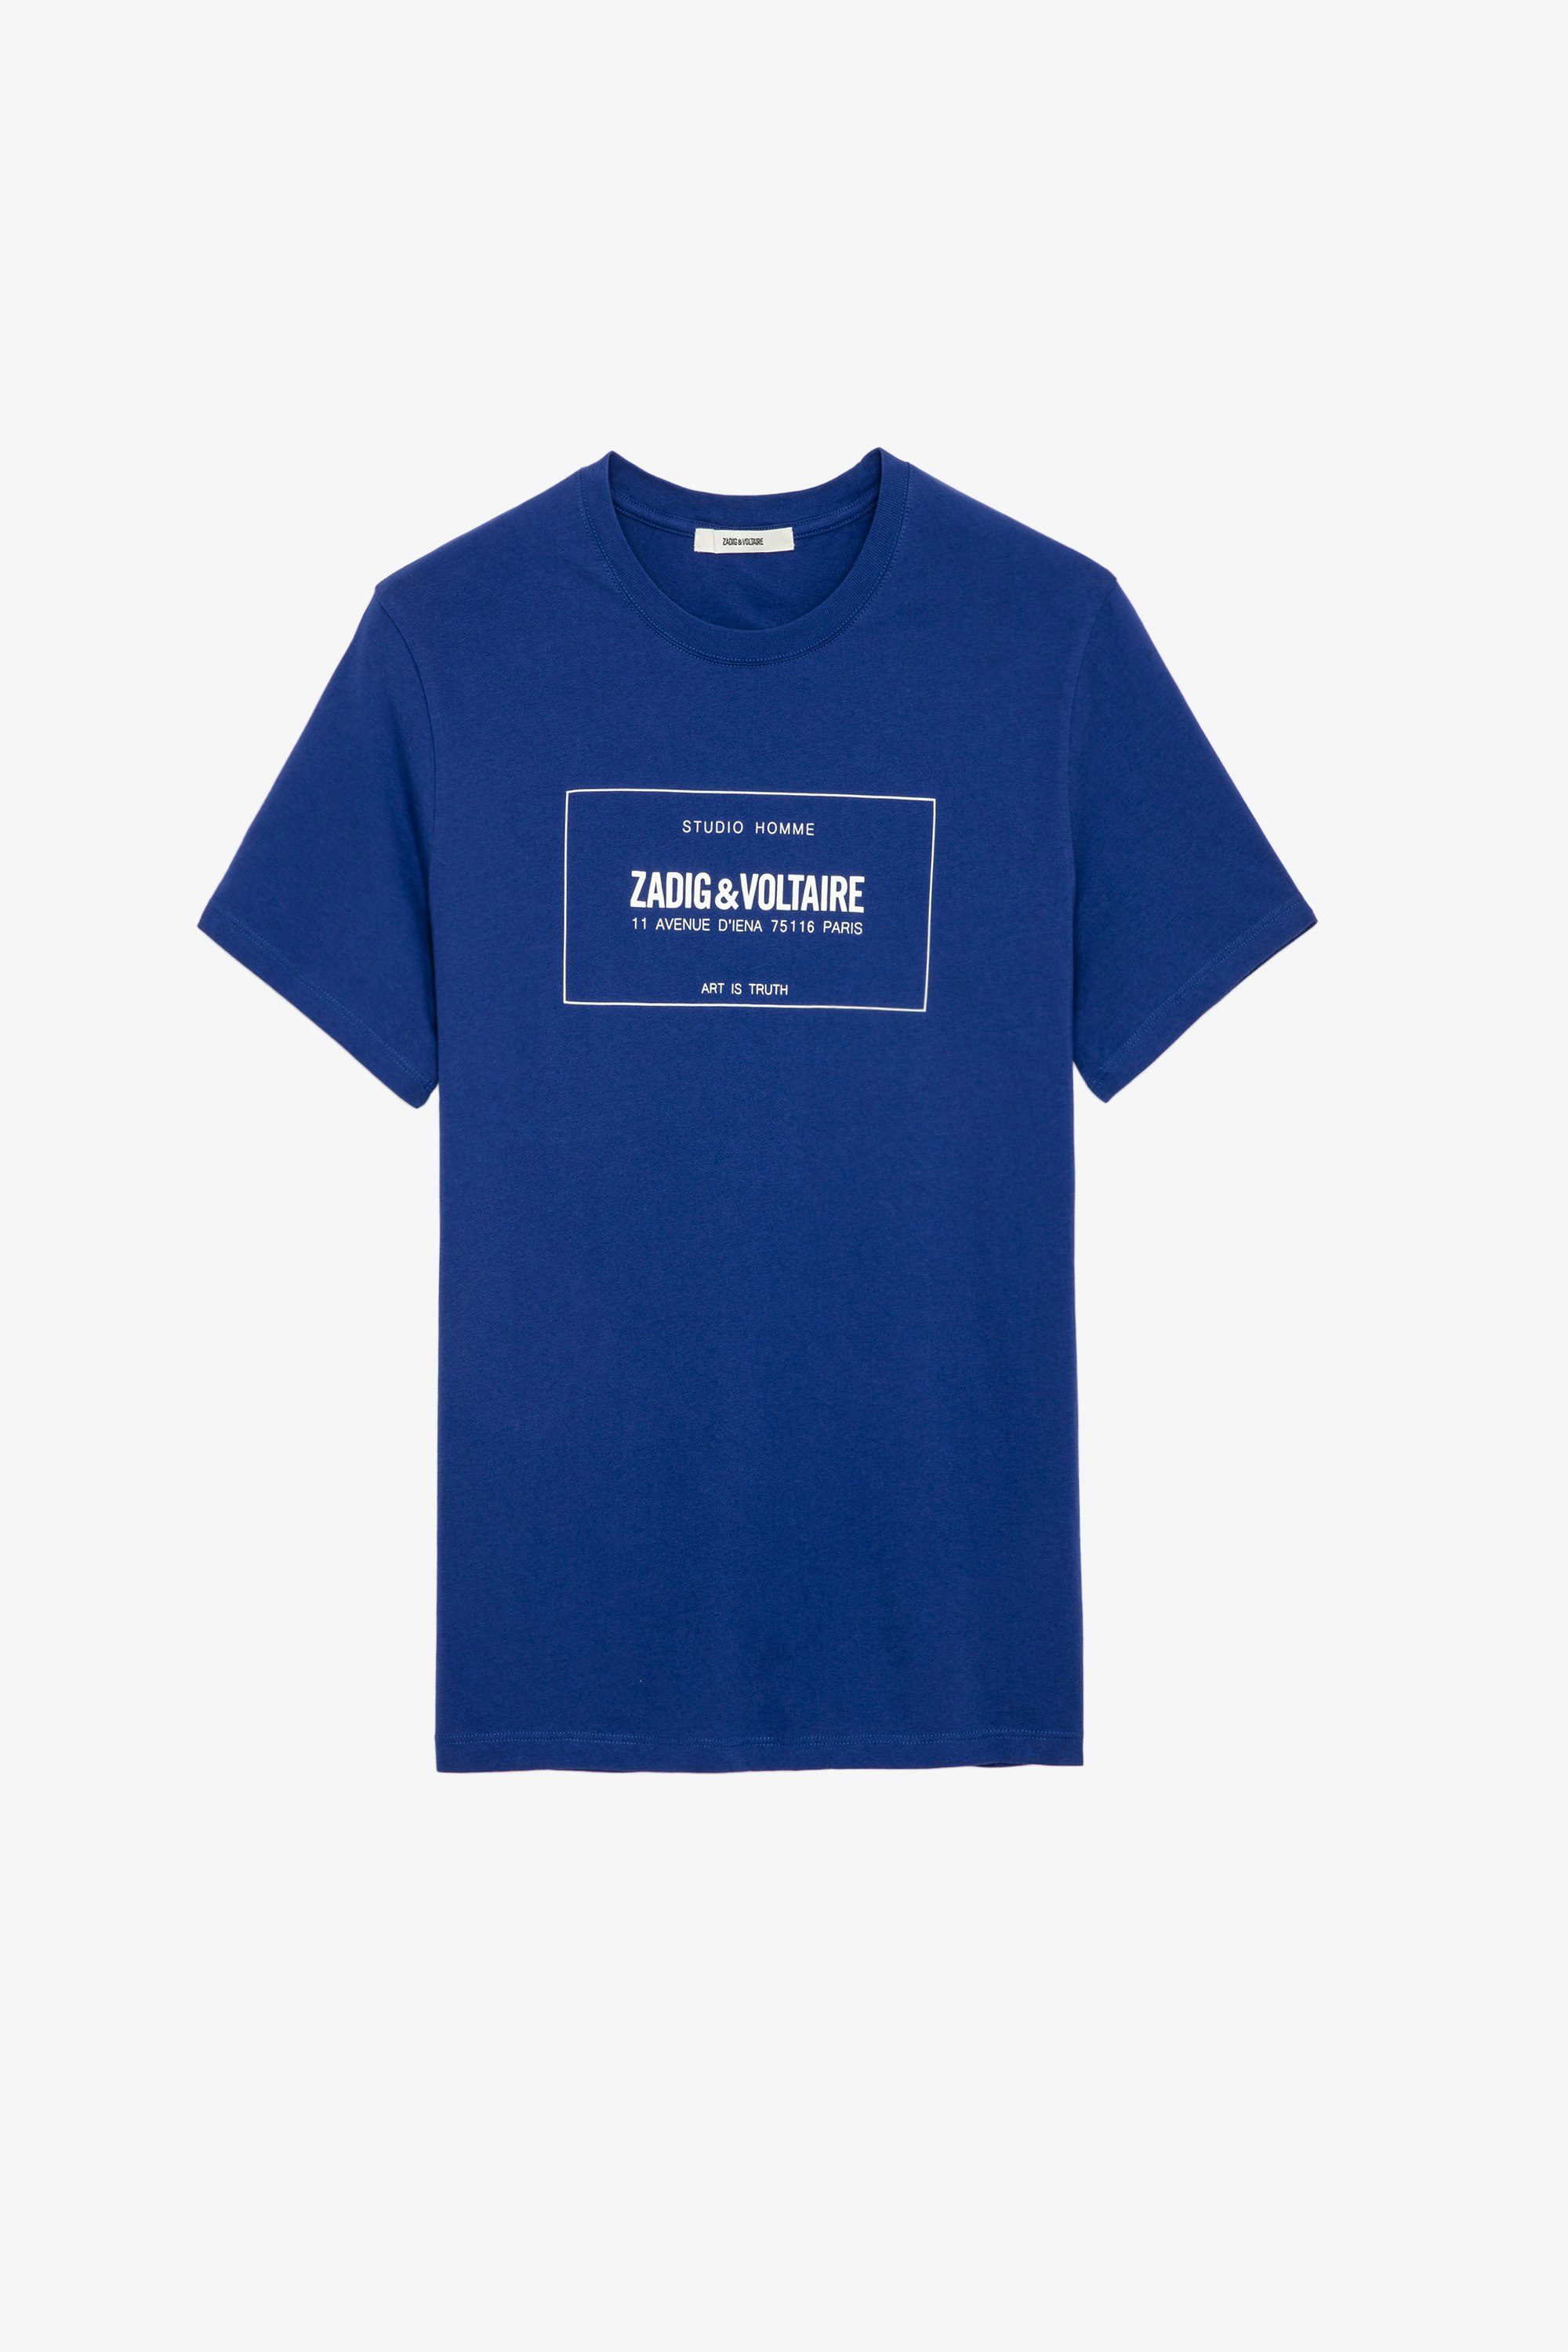 Camiseta Ted Blason Camiseta de algodón azul para hombre 